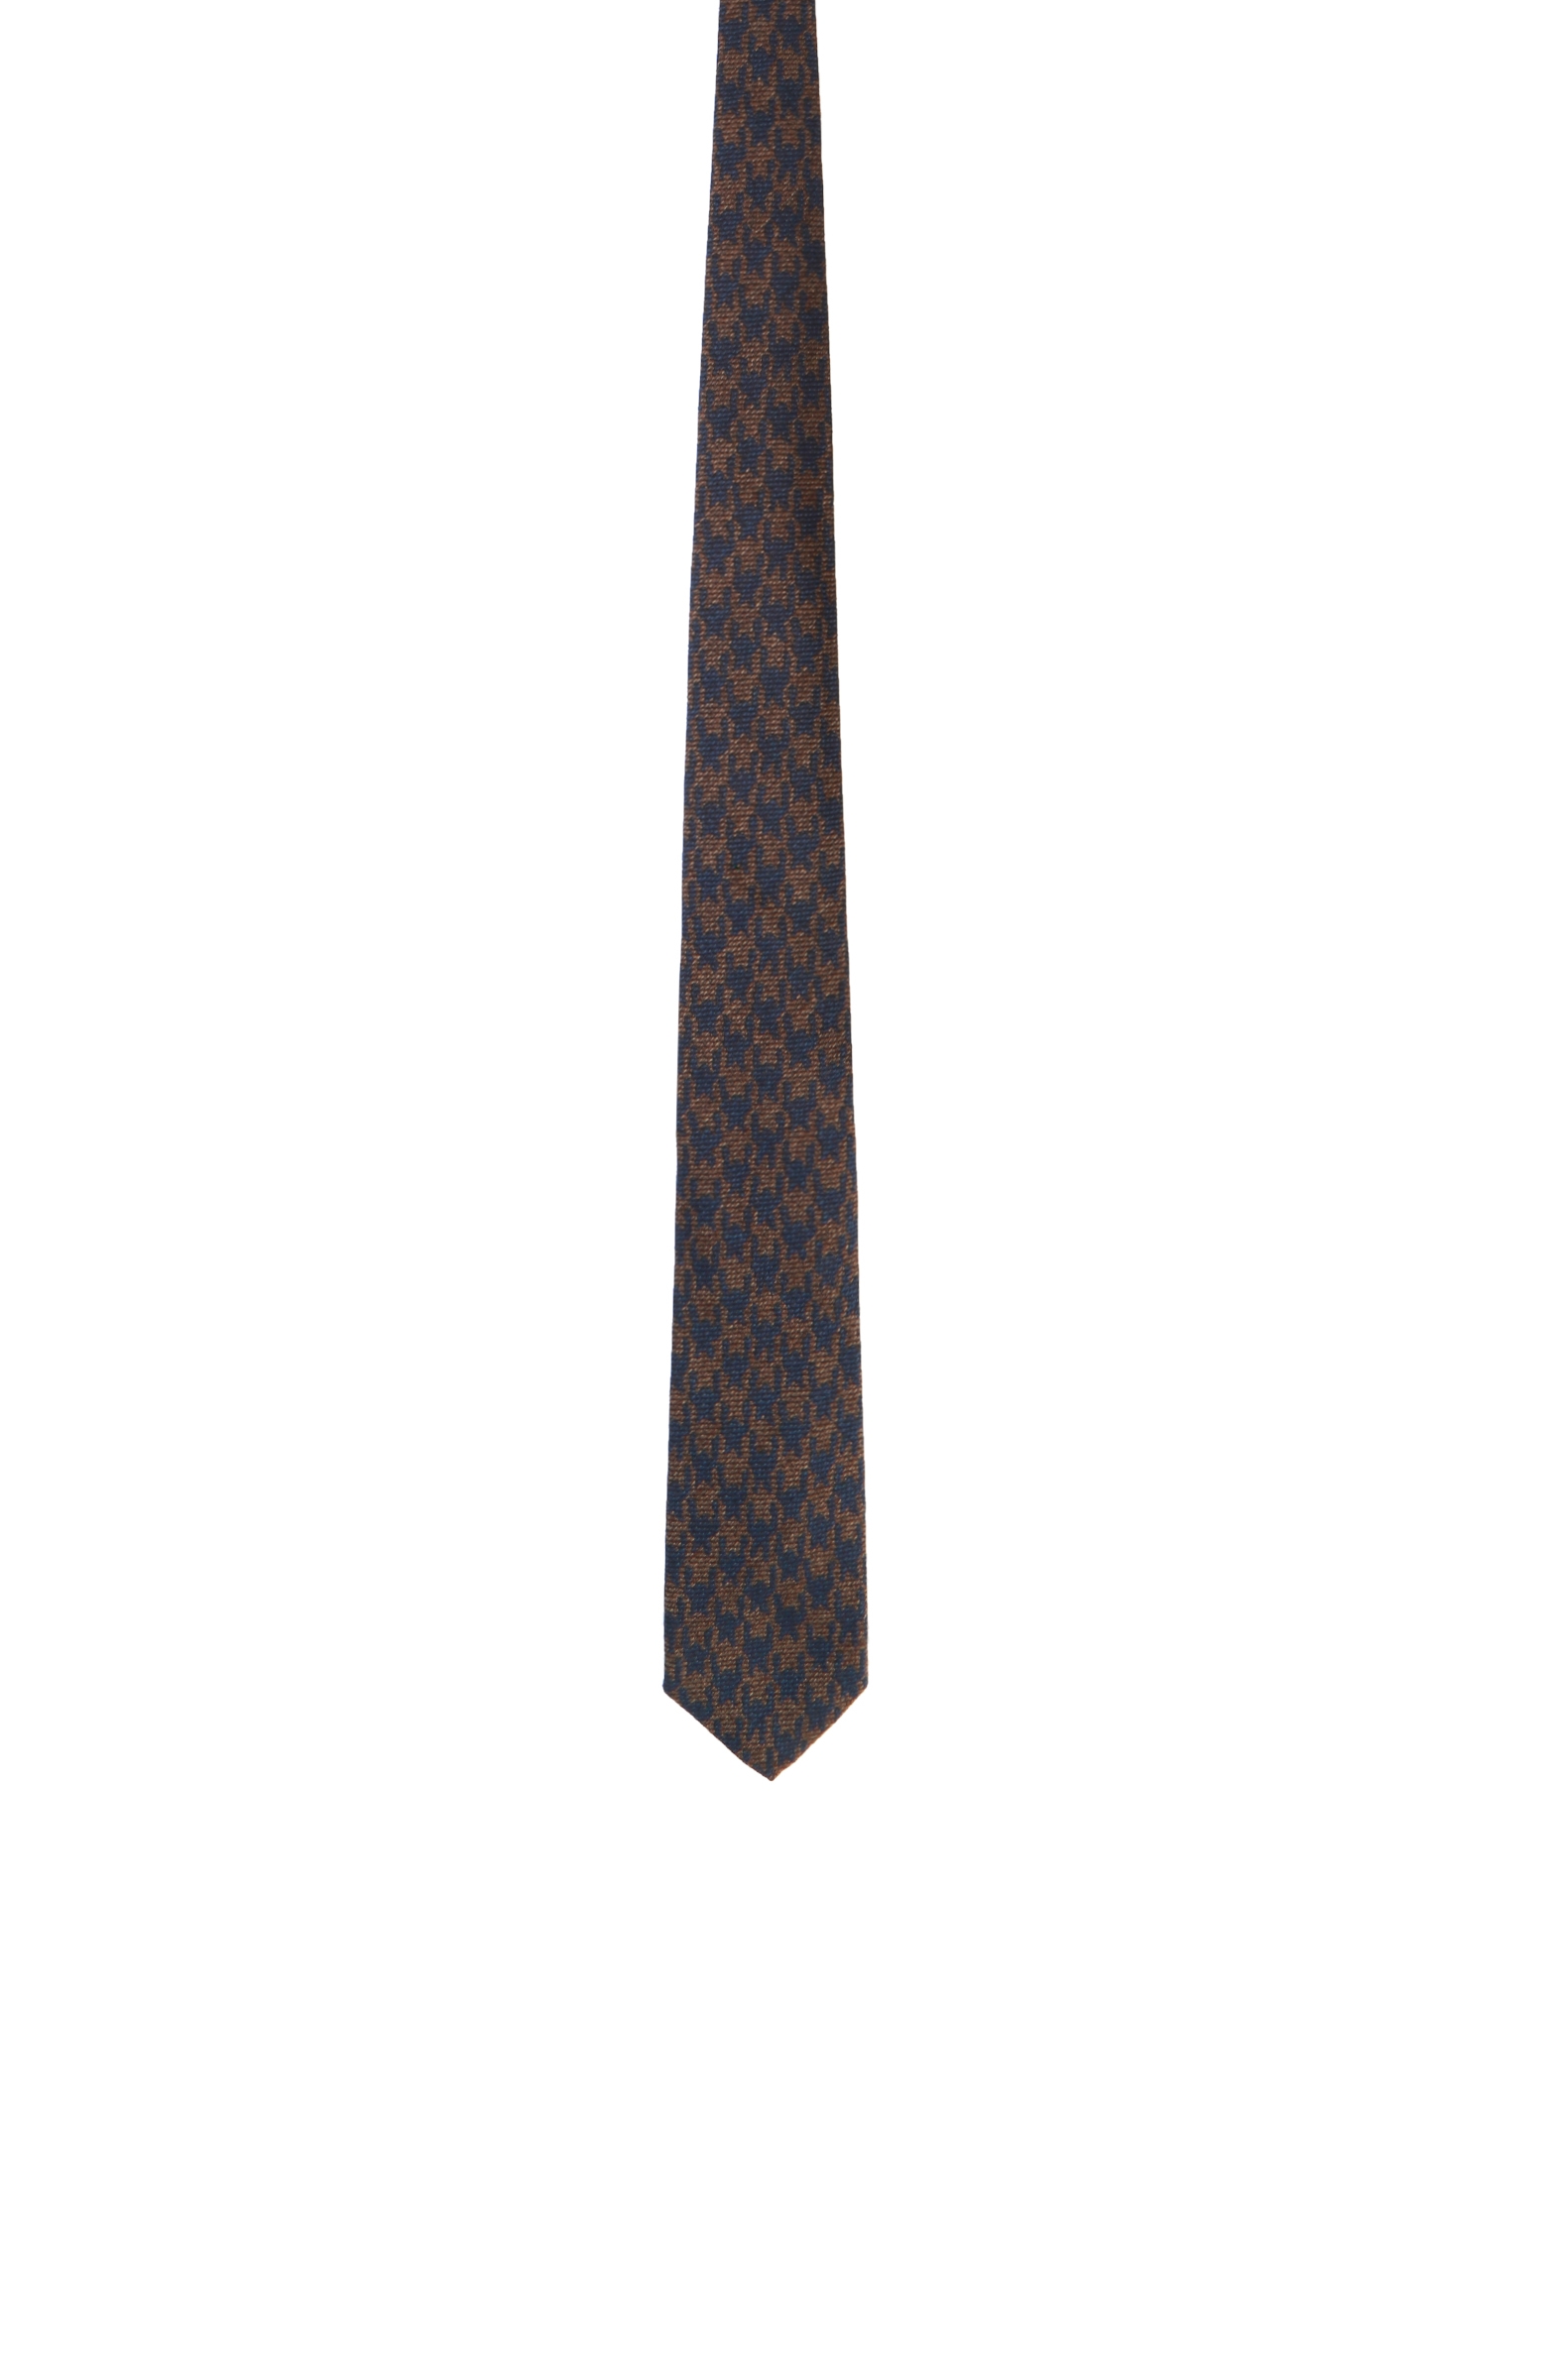 Kaz Ayağı Lacivert-Kahverengi Erkek Kravat